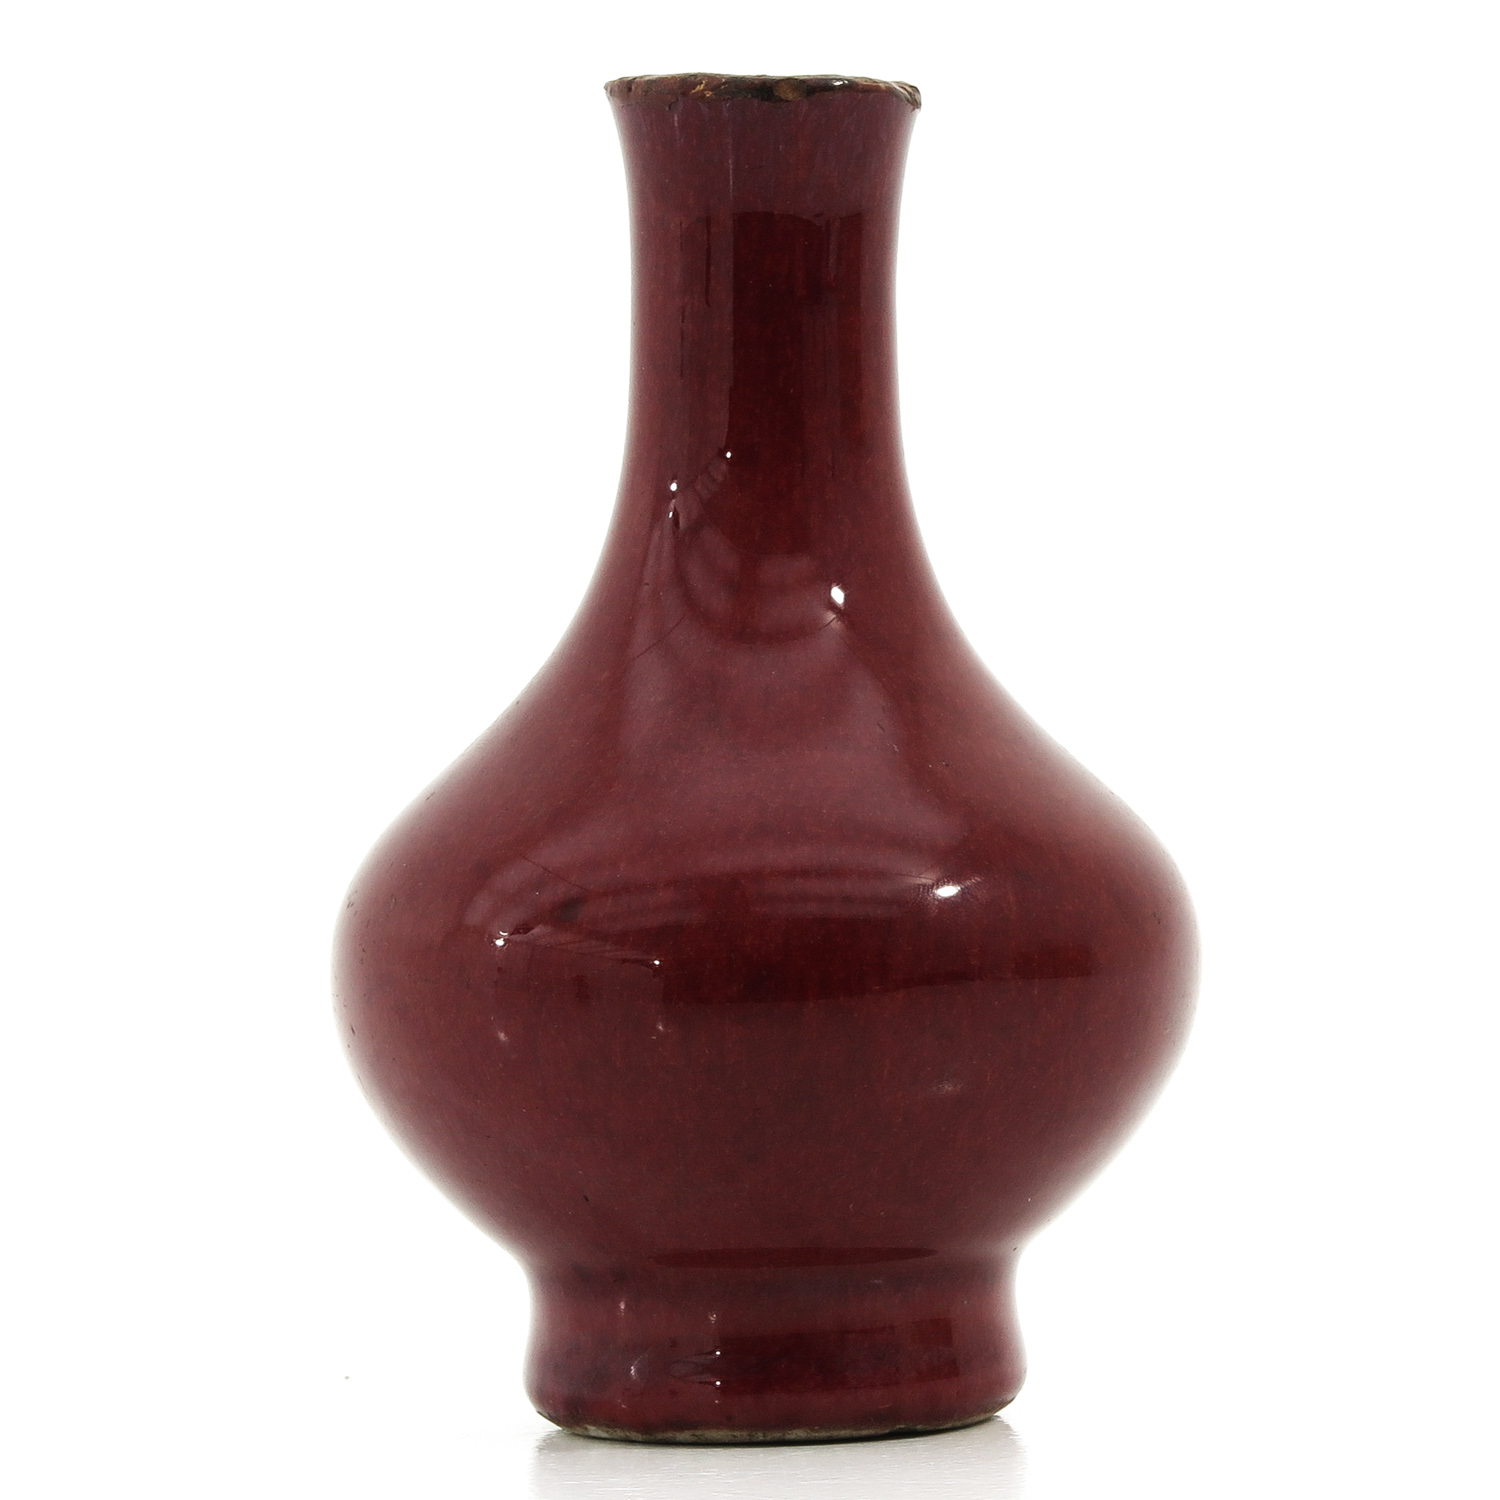 A Small Sang de Boeuf Vase - Image 4 of 9